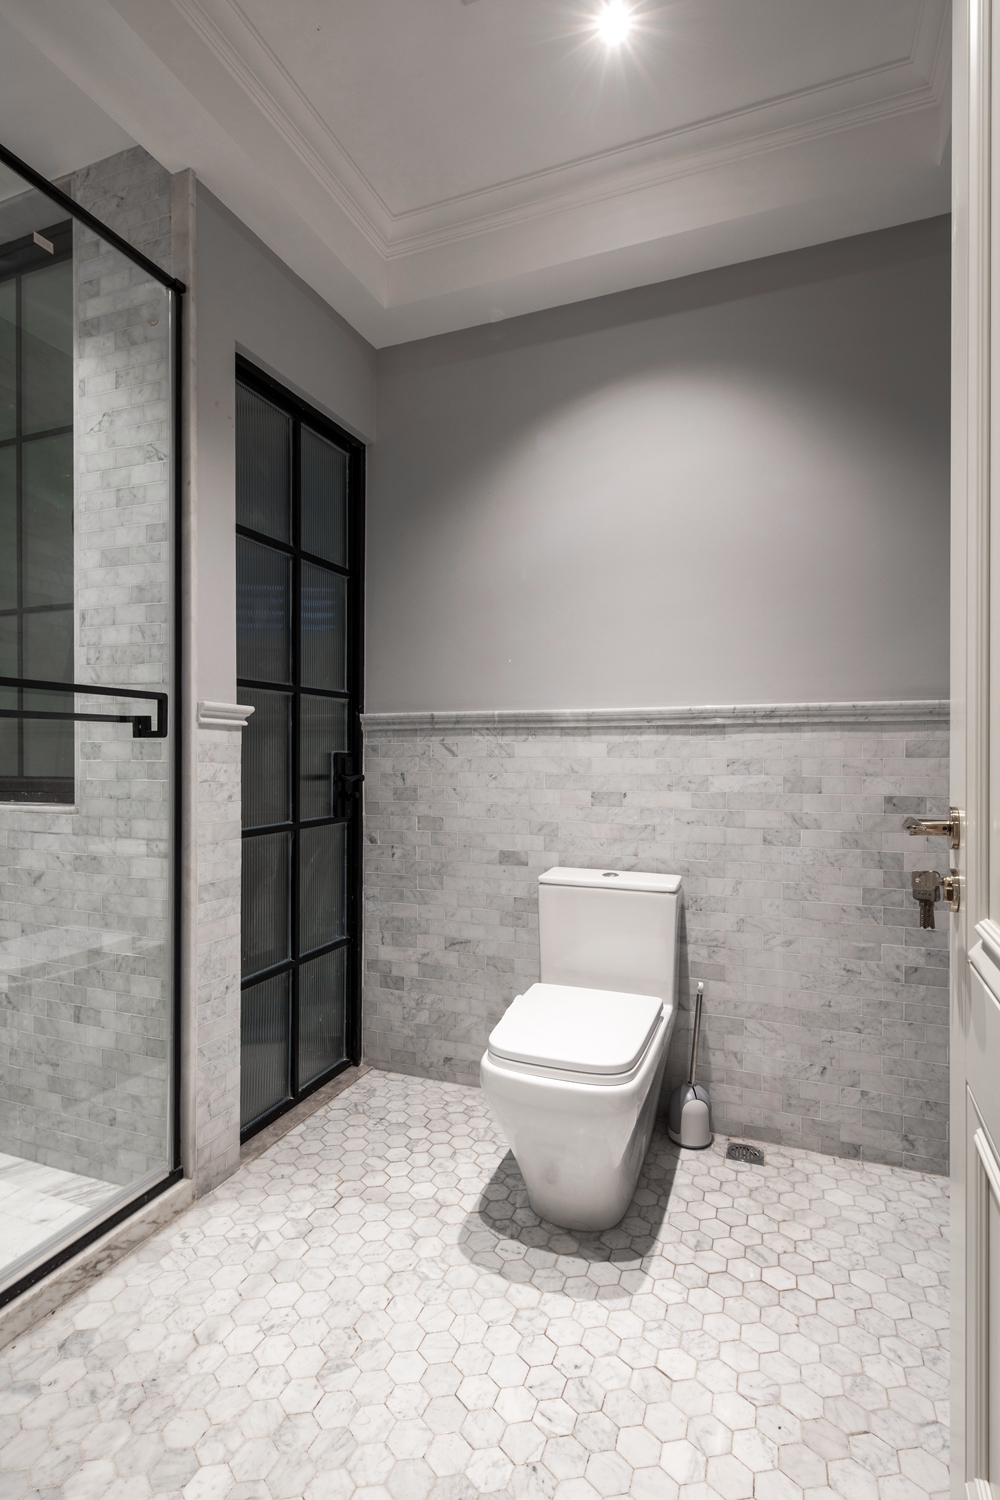 灰色背景墙搭配白色洁具，营造出一个大气不失温柔的卫浴空间，舒适而不失稳重。